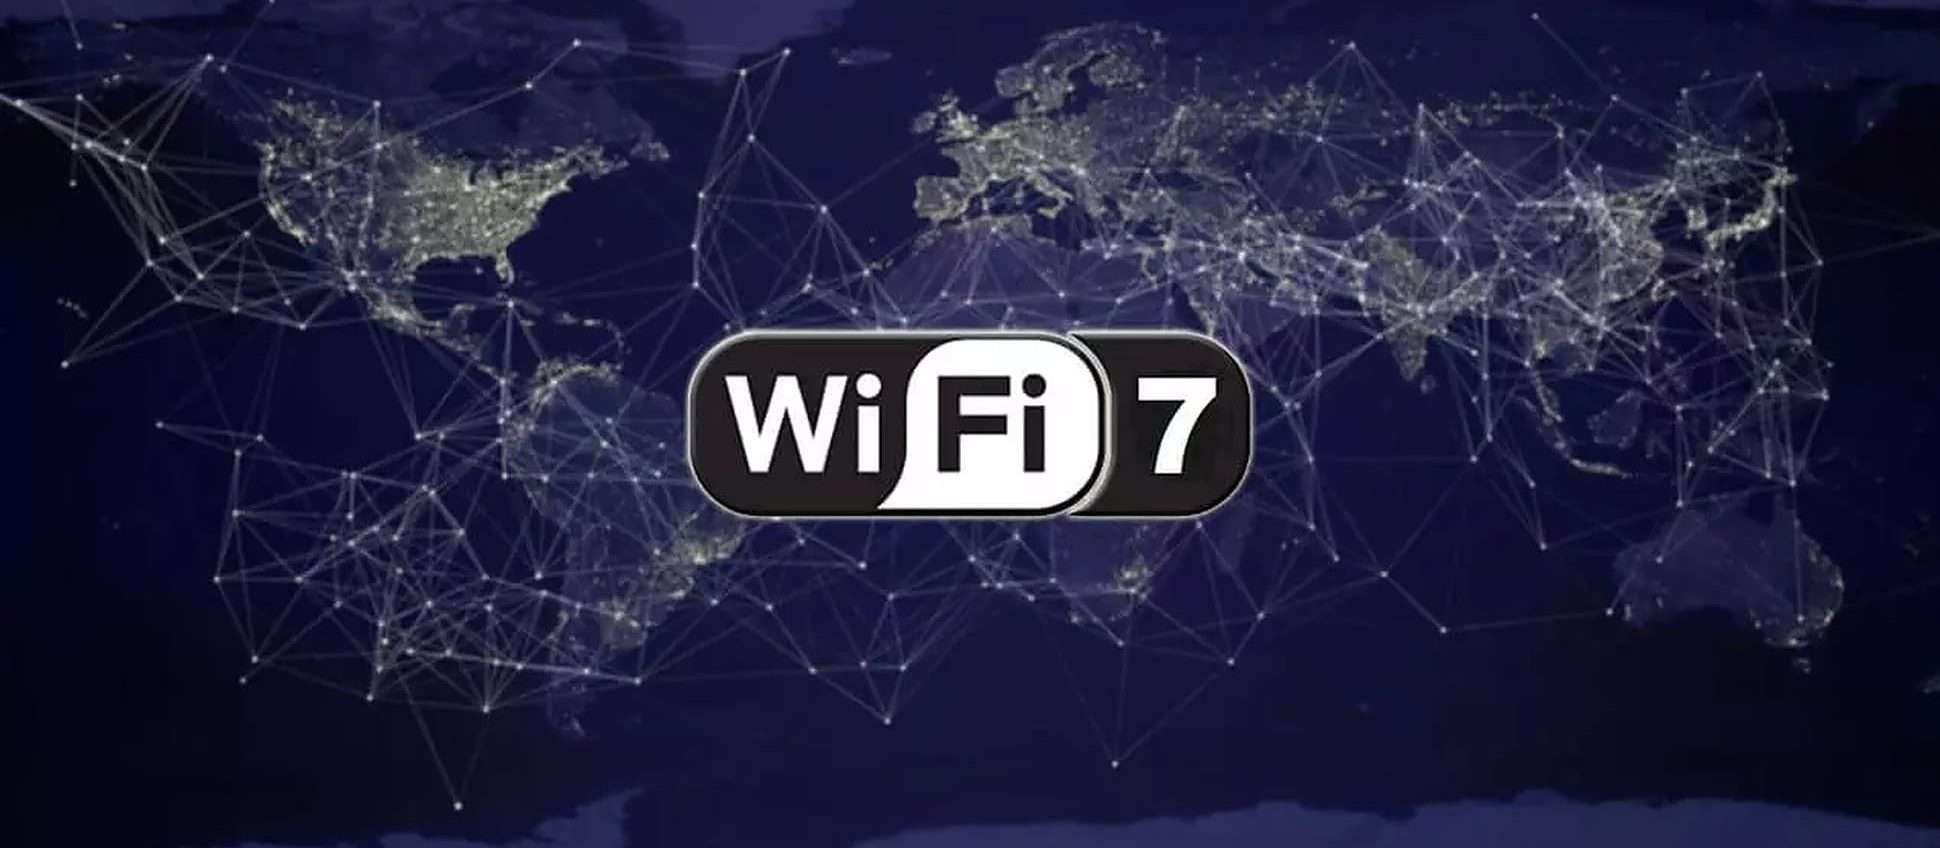 Cos'è Wi-Fi 7 e cosa cambia dal Wi-Fi 6?